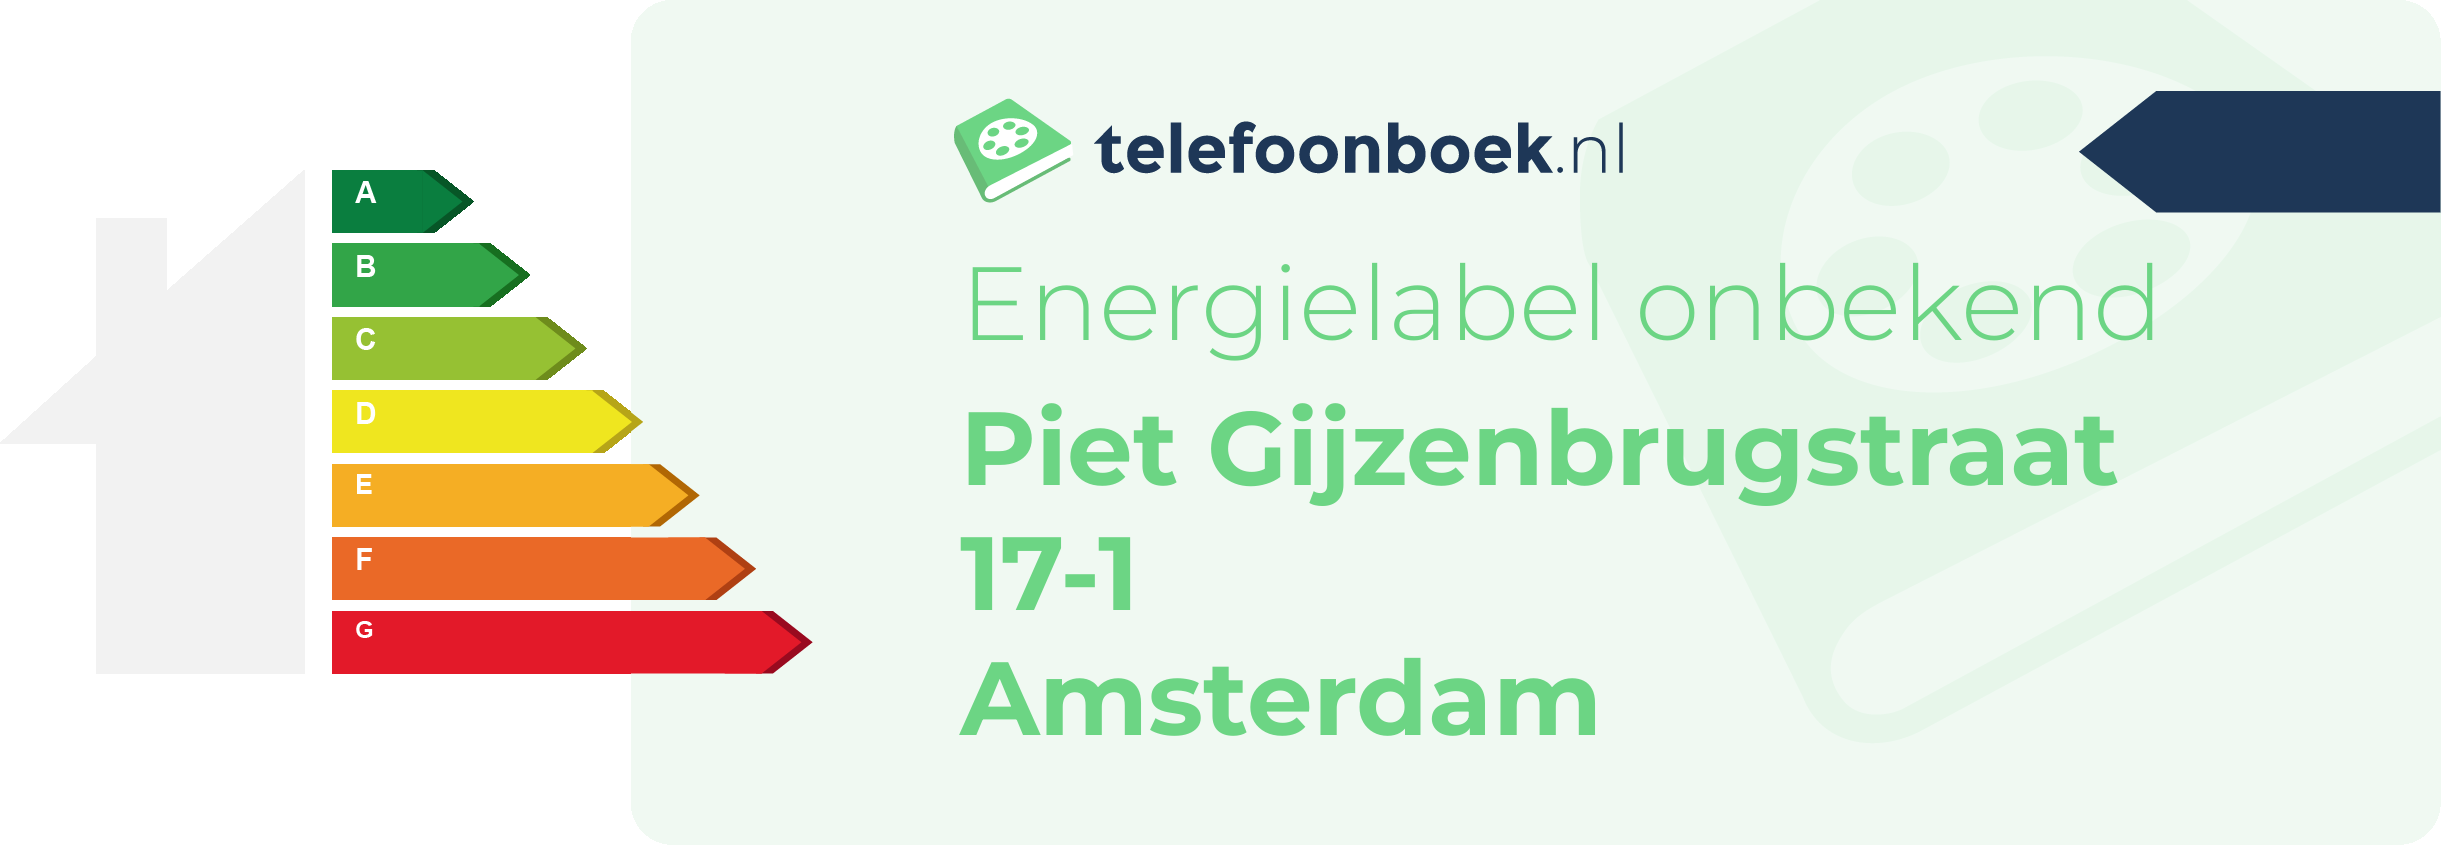 Energielabel Piet Gijzenbrugstraat 17-1 Amsterdam